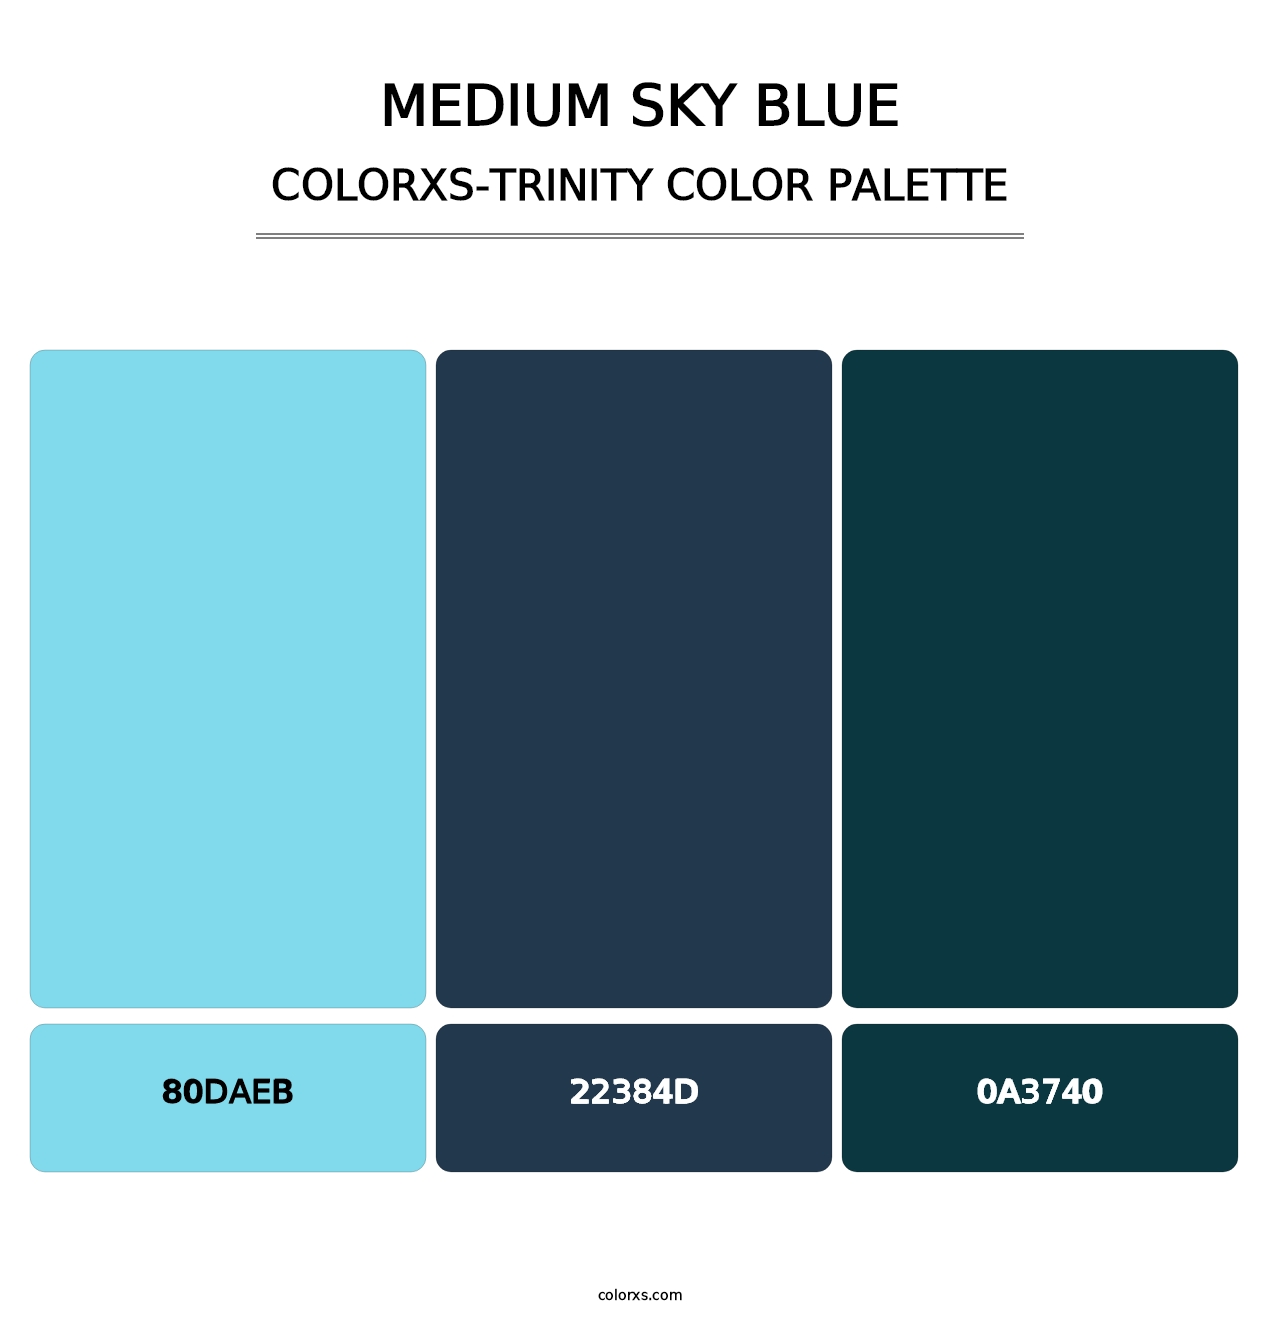 Medium Sky Blue - Colorxs Trinity Palette